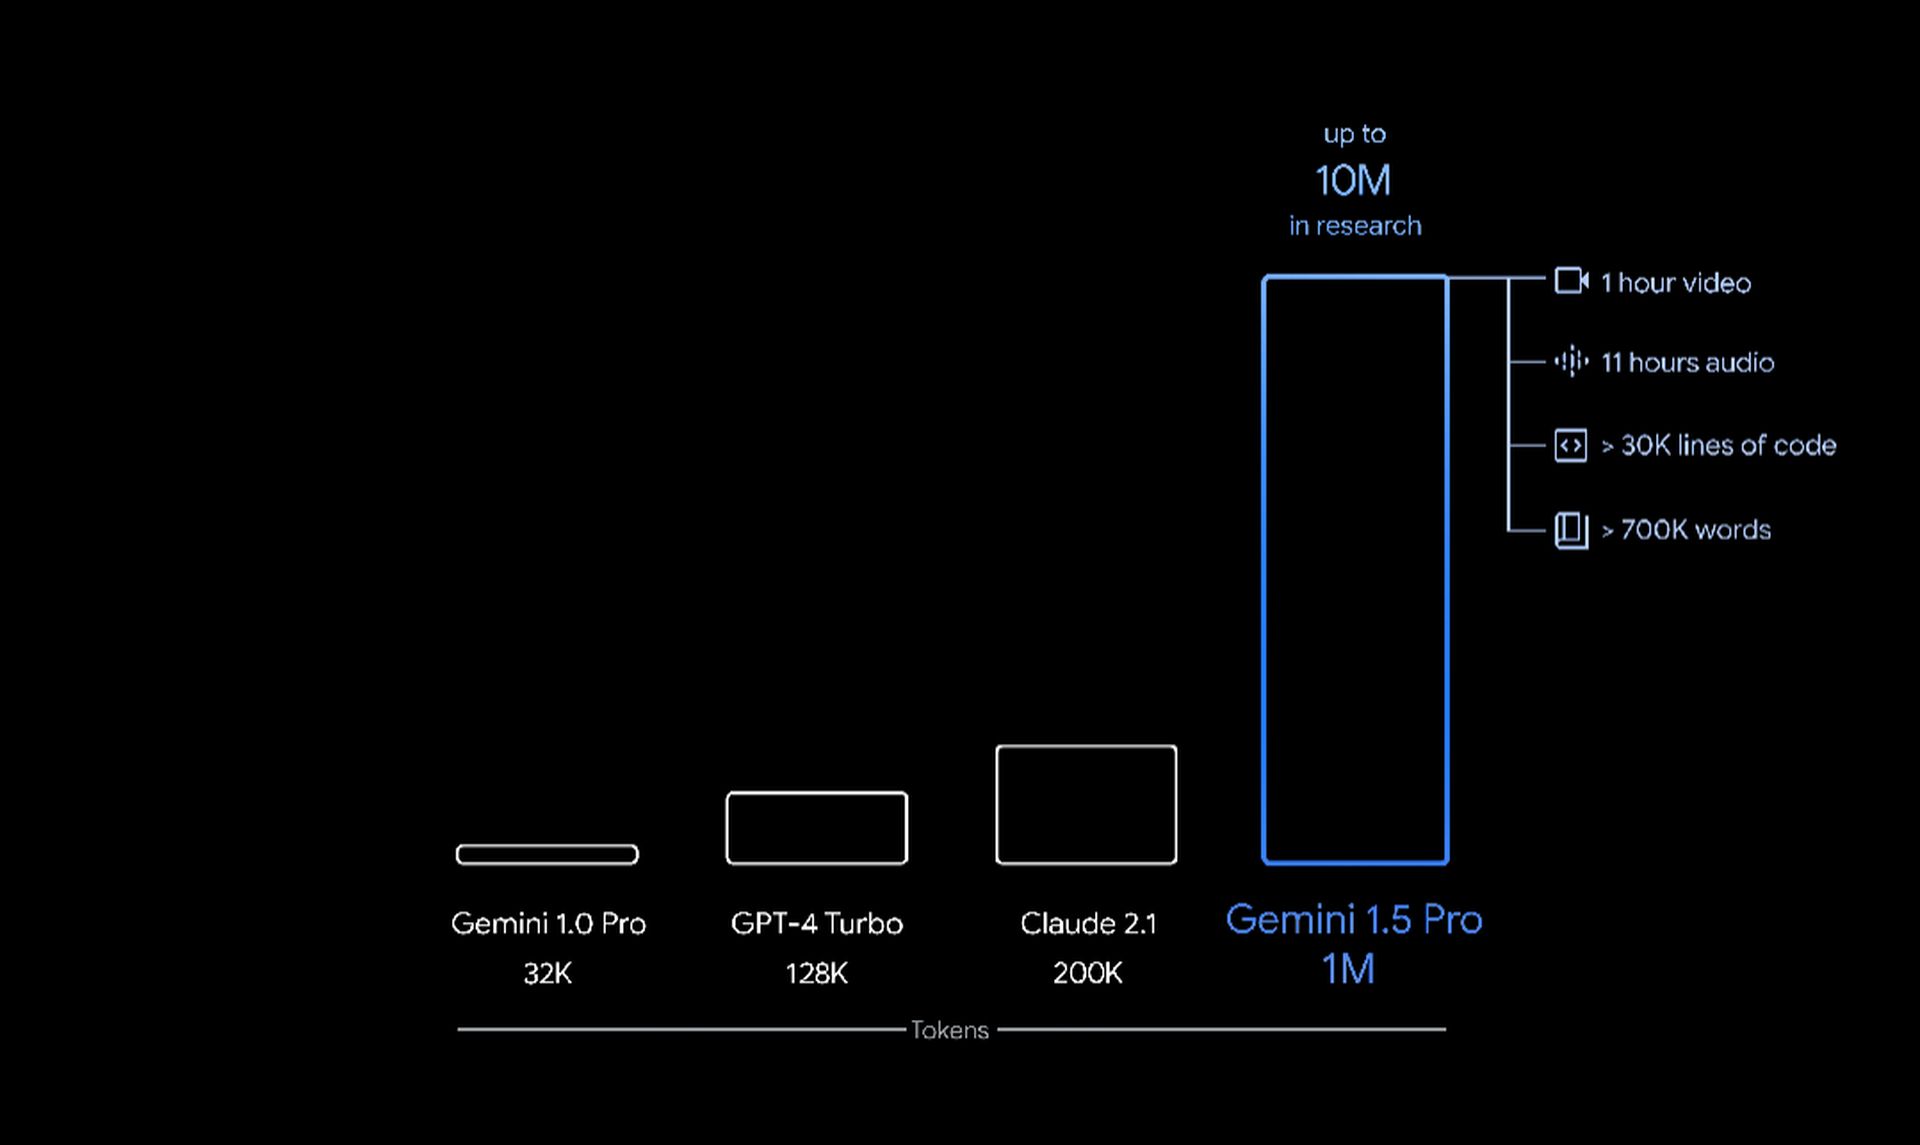 Wat is Google Gemini 1.5 Pro?